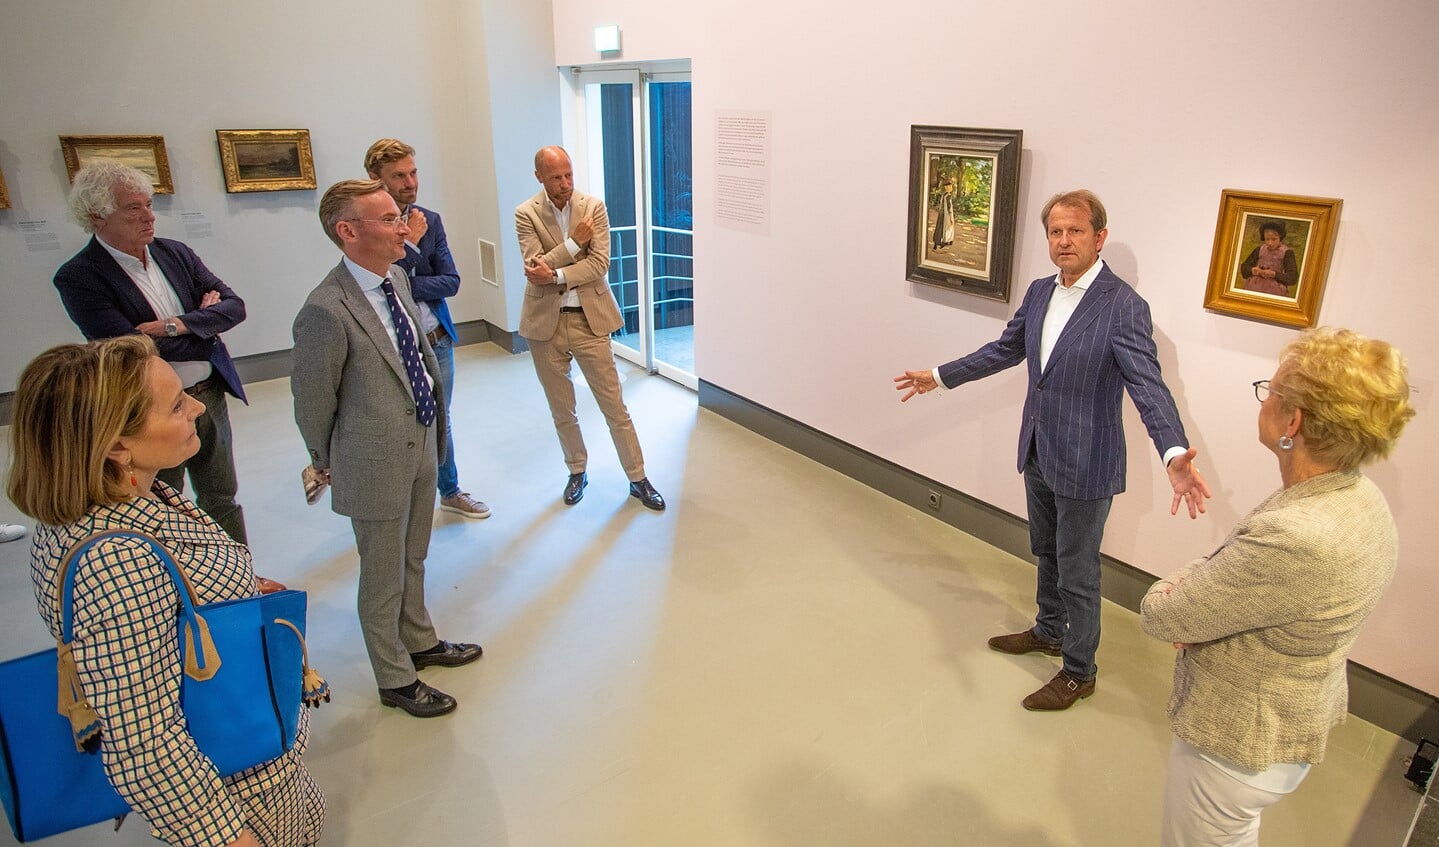 Jan Rudolph de Lorm vertelt burgemeester en wethouders enthousiast over de nieuwe aanwinst in het museum.